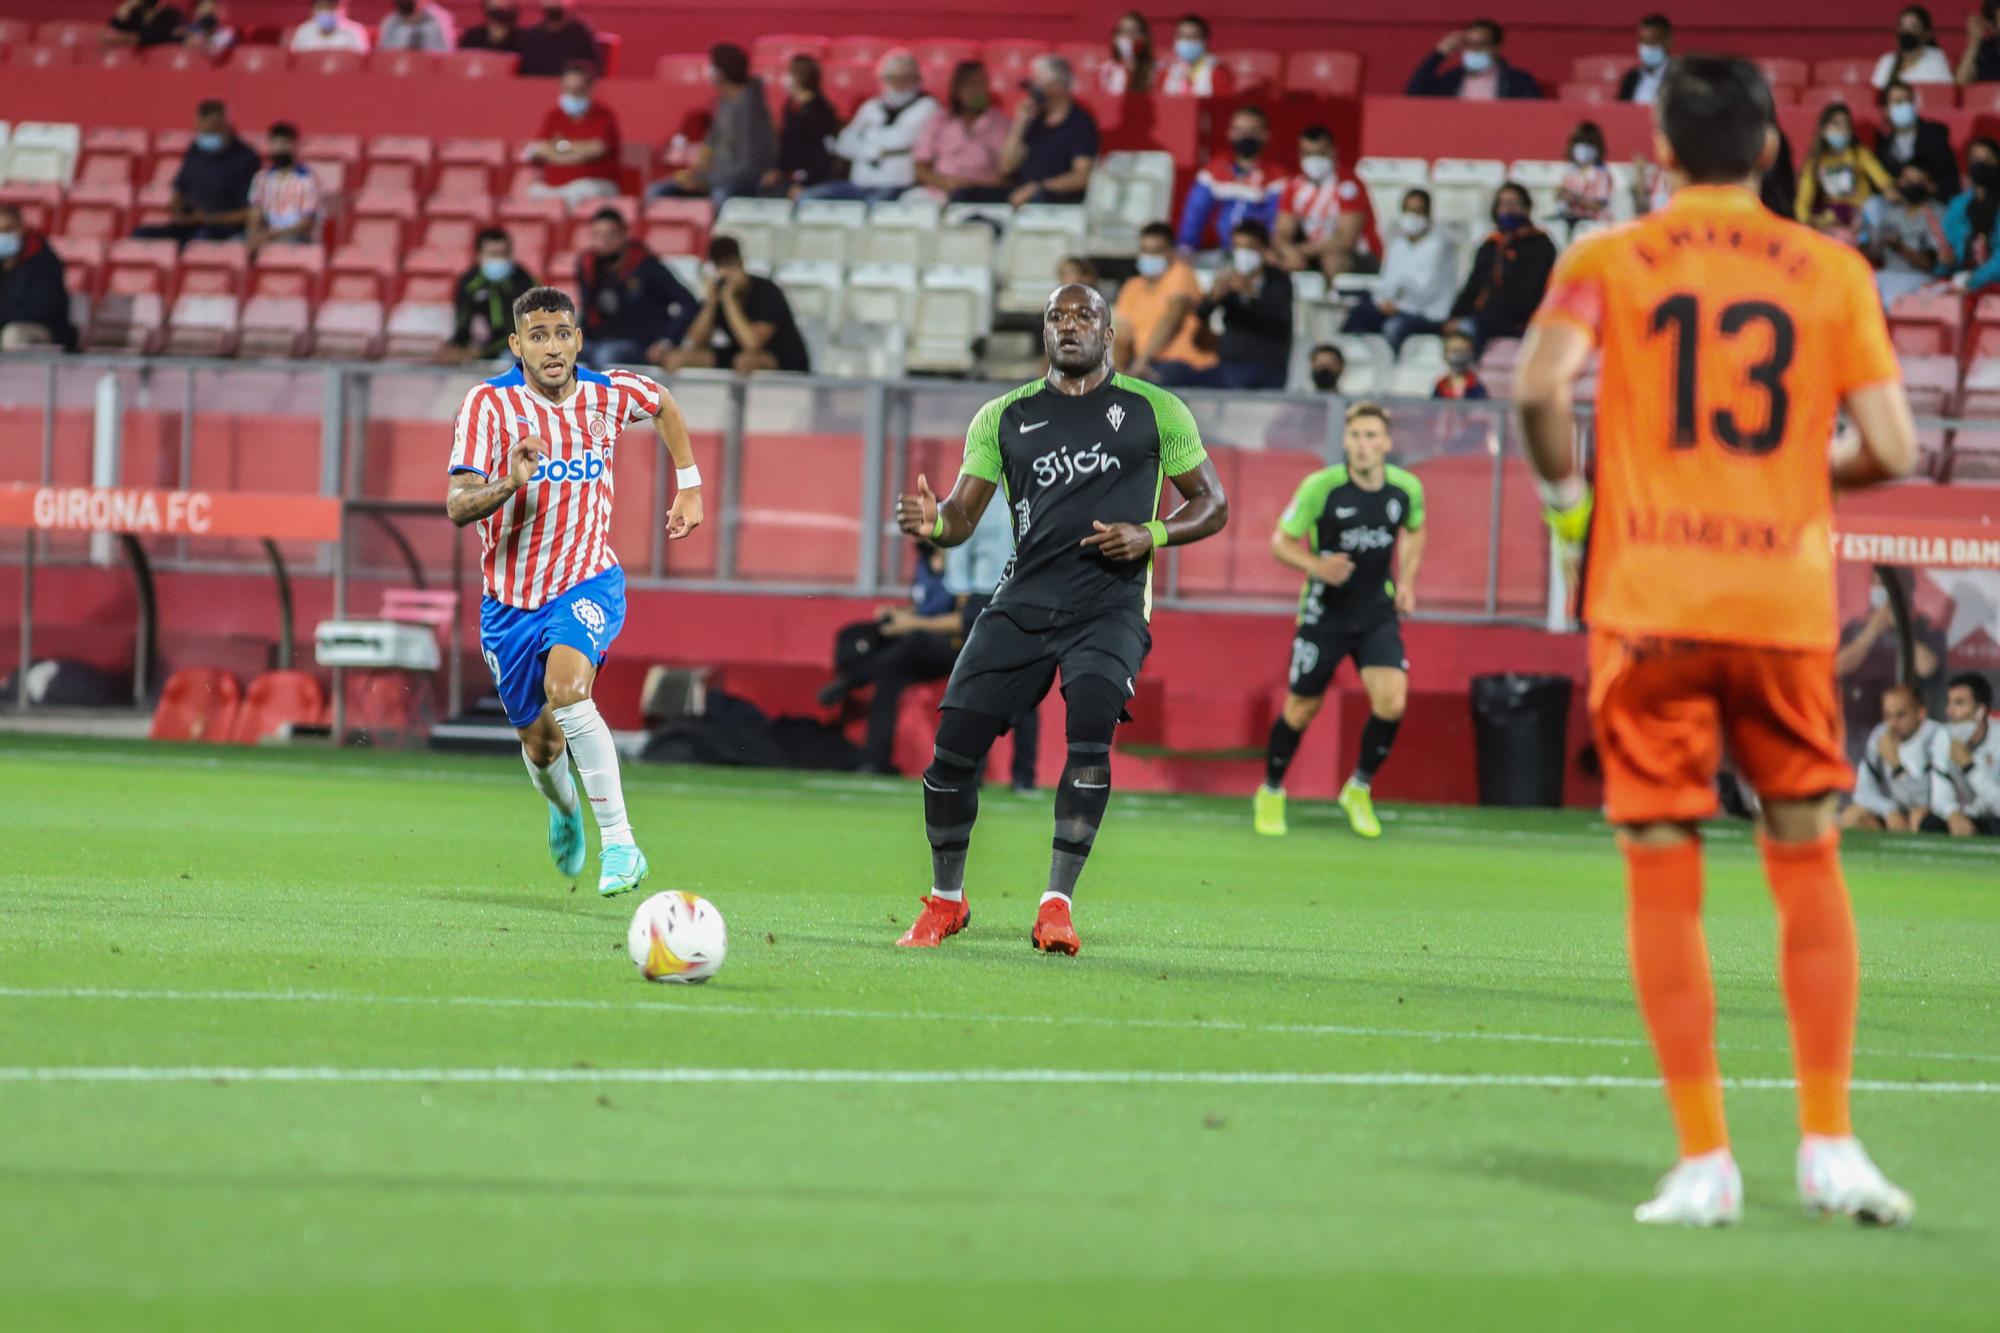 Las imágenes del partido entre el Girona y el Sporting (1-2)